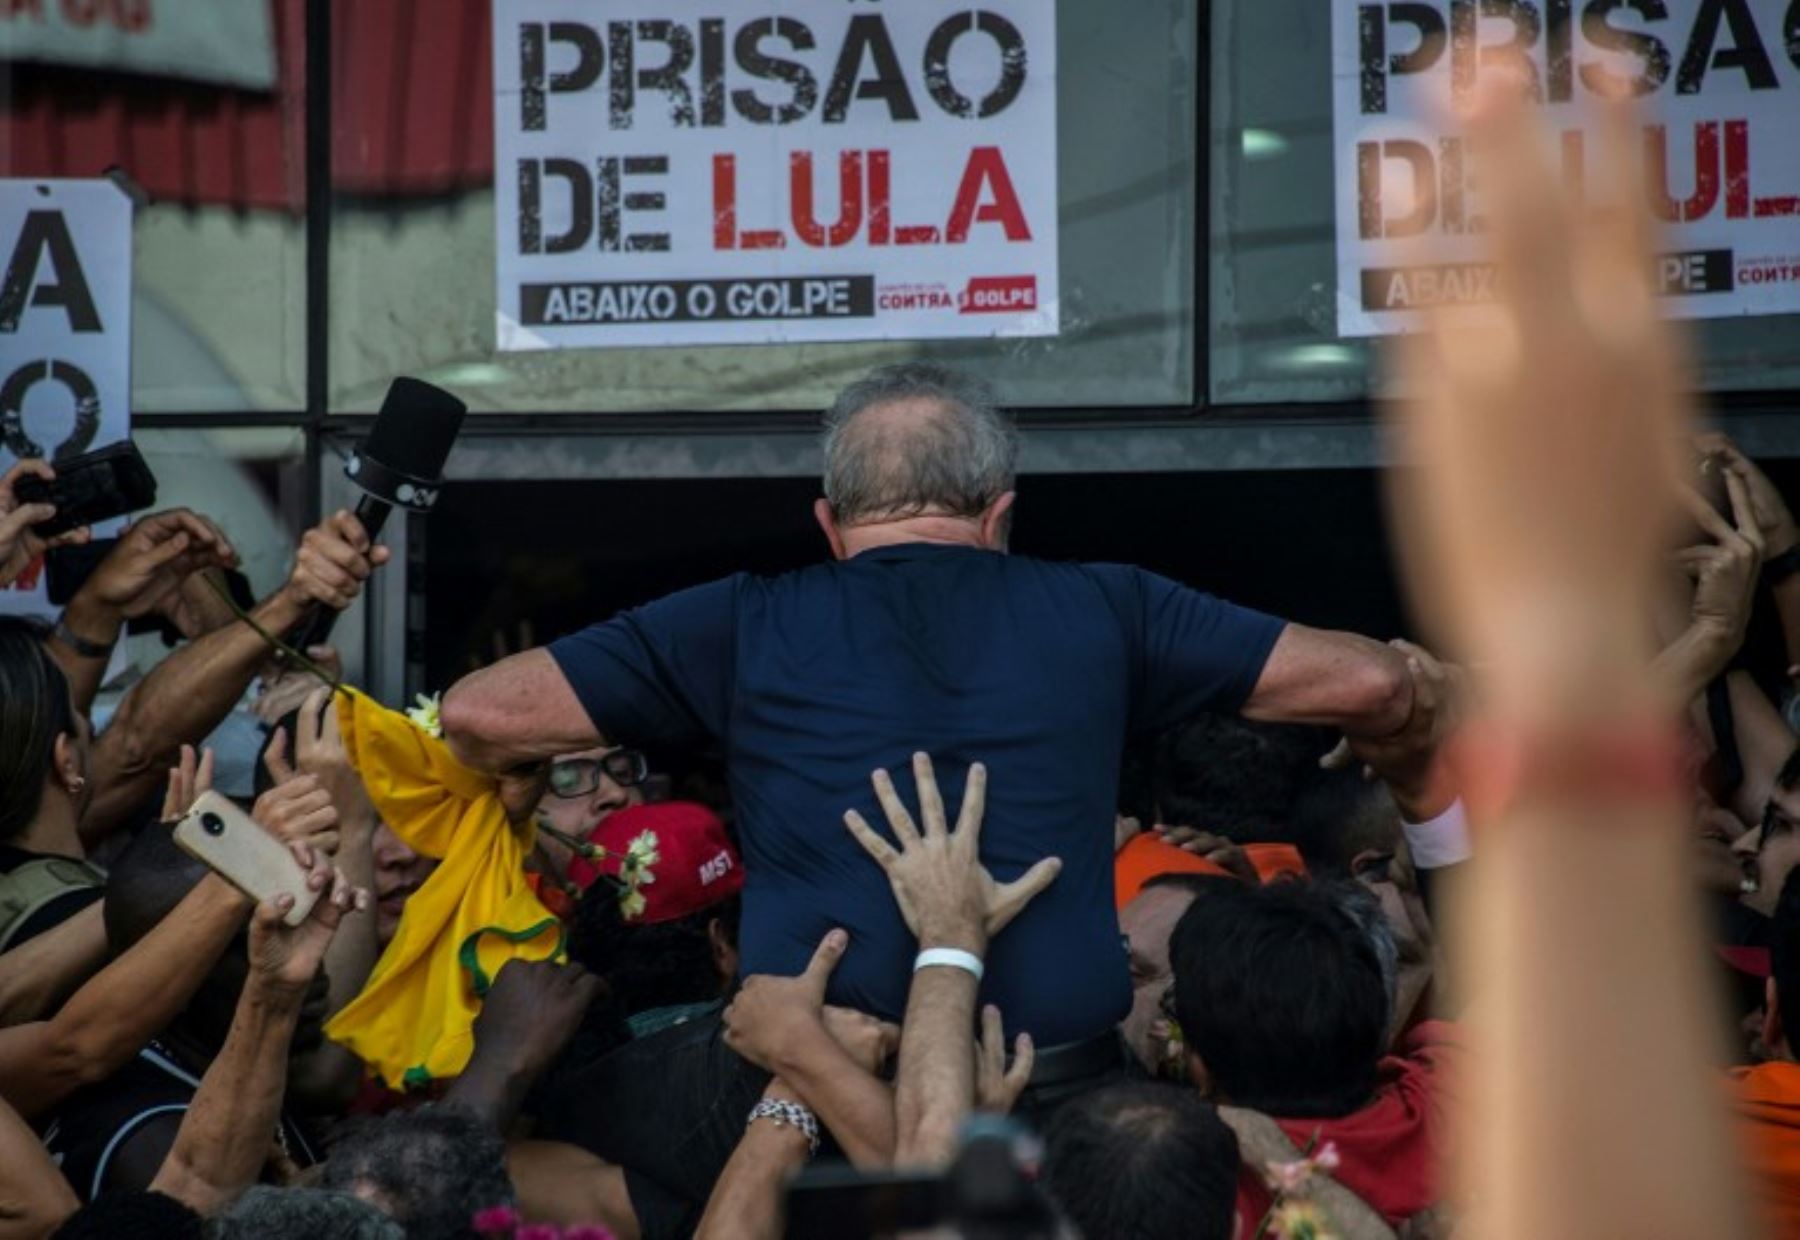 El ex presidente brasileño Luiz Inácio Lula da Silva, ícono izquierdista de Brasil dijo: que cumplirá con una orden de arresto para comenzar una sentencia de 12 años por corrupción. "Cumpliré con su orden", dijo a una multitud de seguidores.Foto:AFP